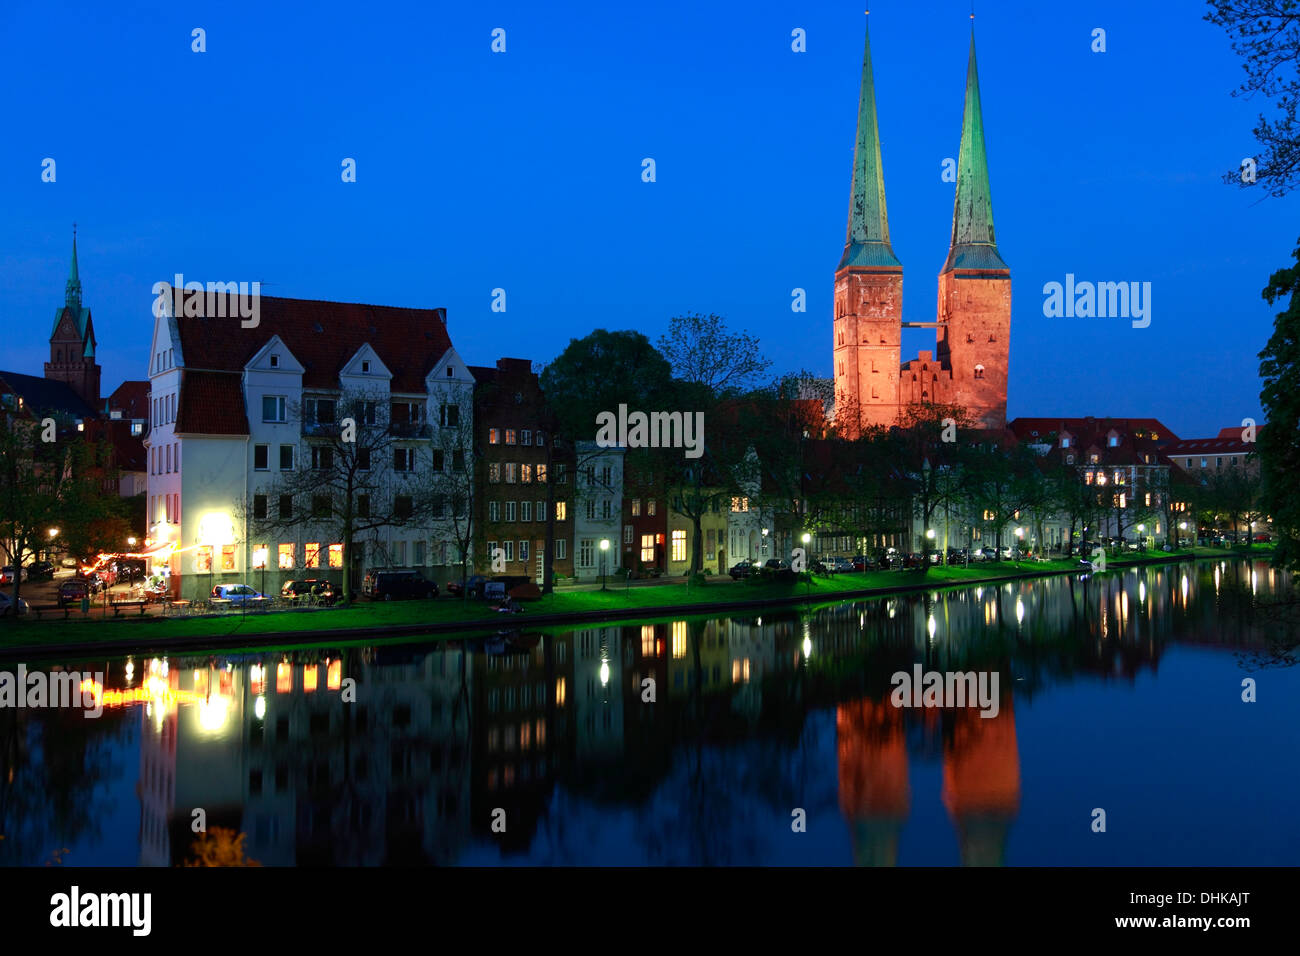 Historischen Hafen am Fluss Trave mit Kathedrale, hanseatische Stadt Lübeck, Schleswig-Holstein, Deutschland Stockfoto